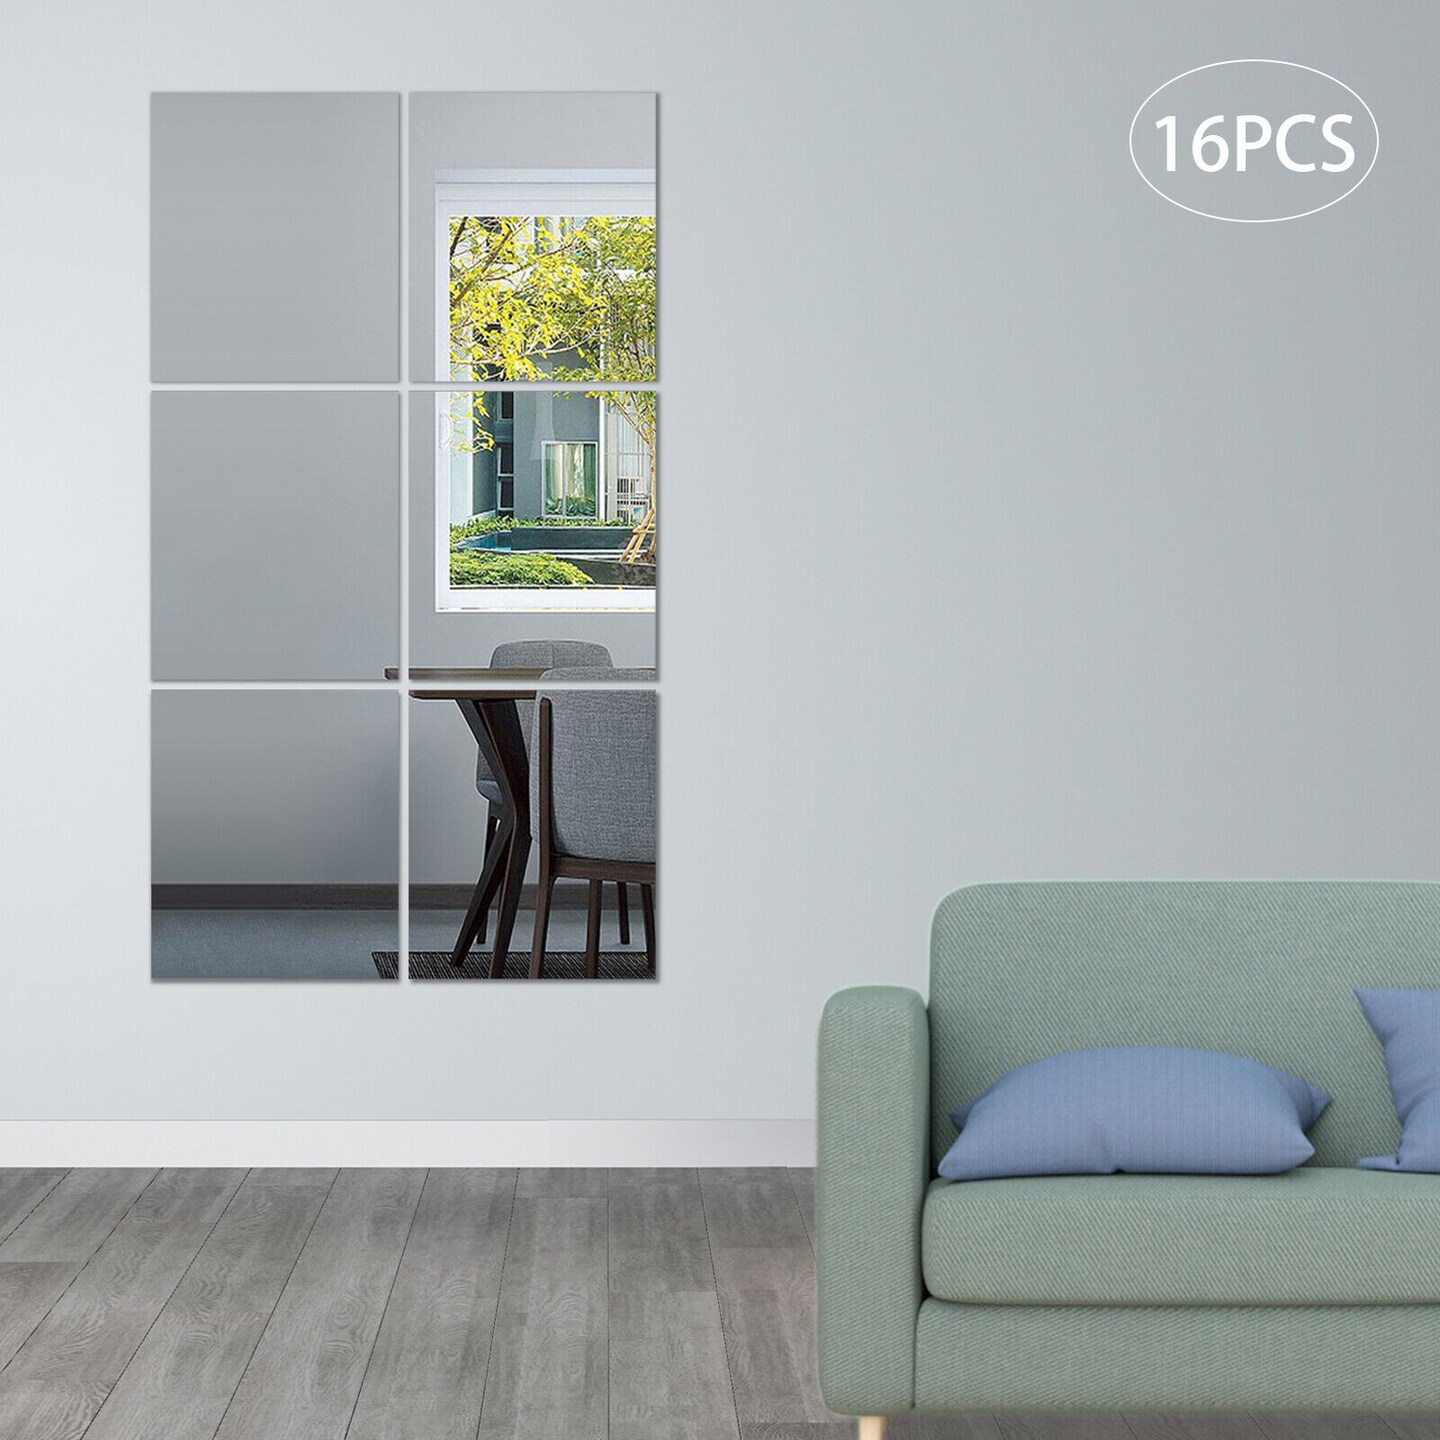 Kitcheniva 16PCs Frameless Acrylic Full Length Shatterproof Mirror